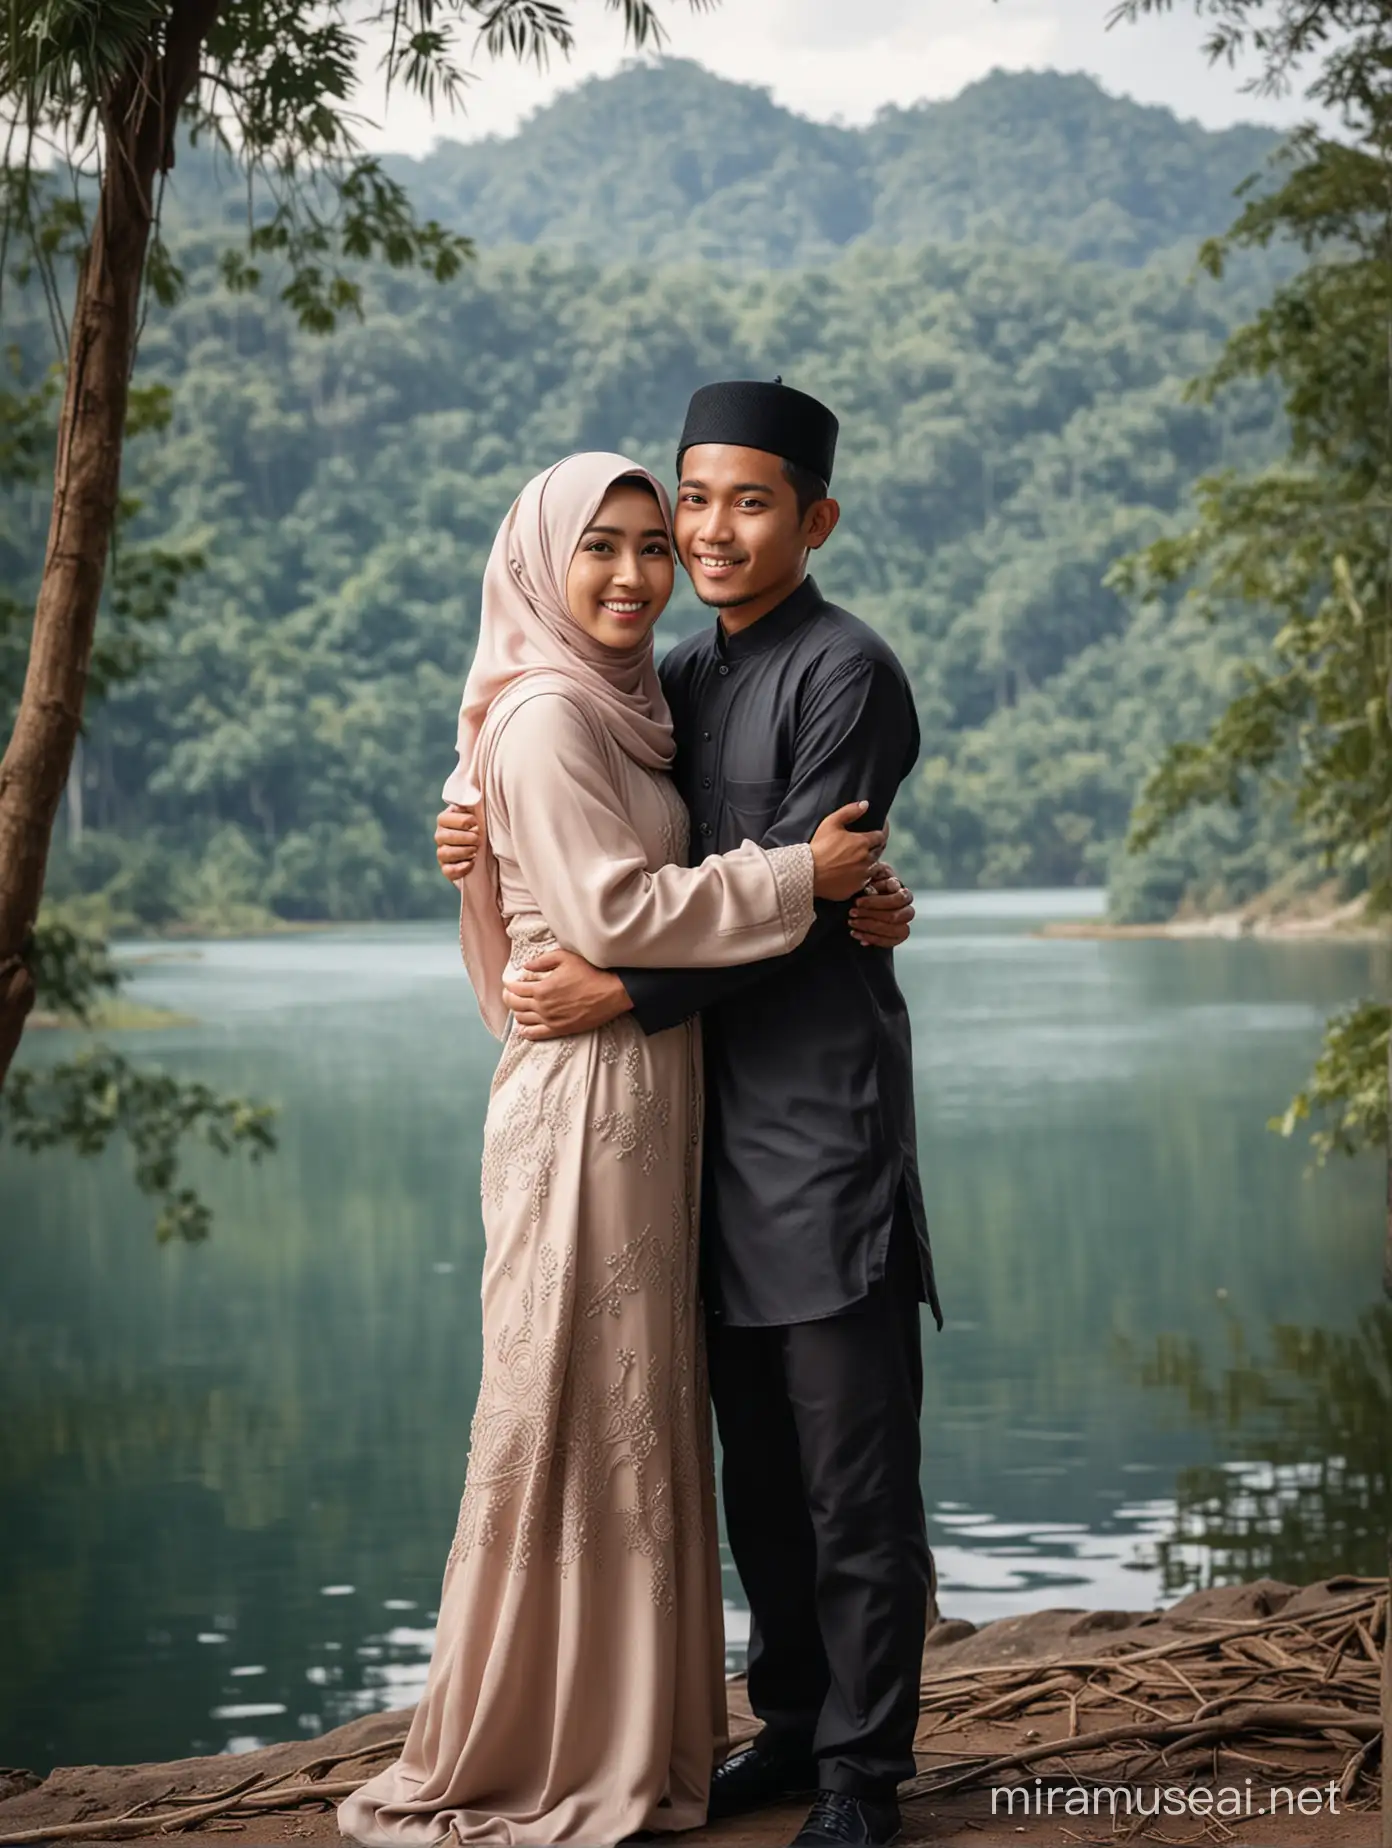 Pasangan Indonesia umur 27 tahun muslim , wanita dipeluk dari belakang realistis foto.background  pemandangan telaga sarangan Magetan.